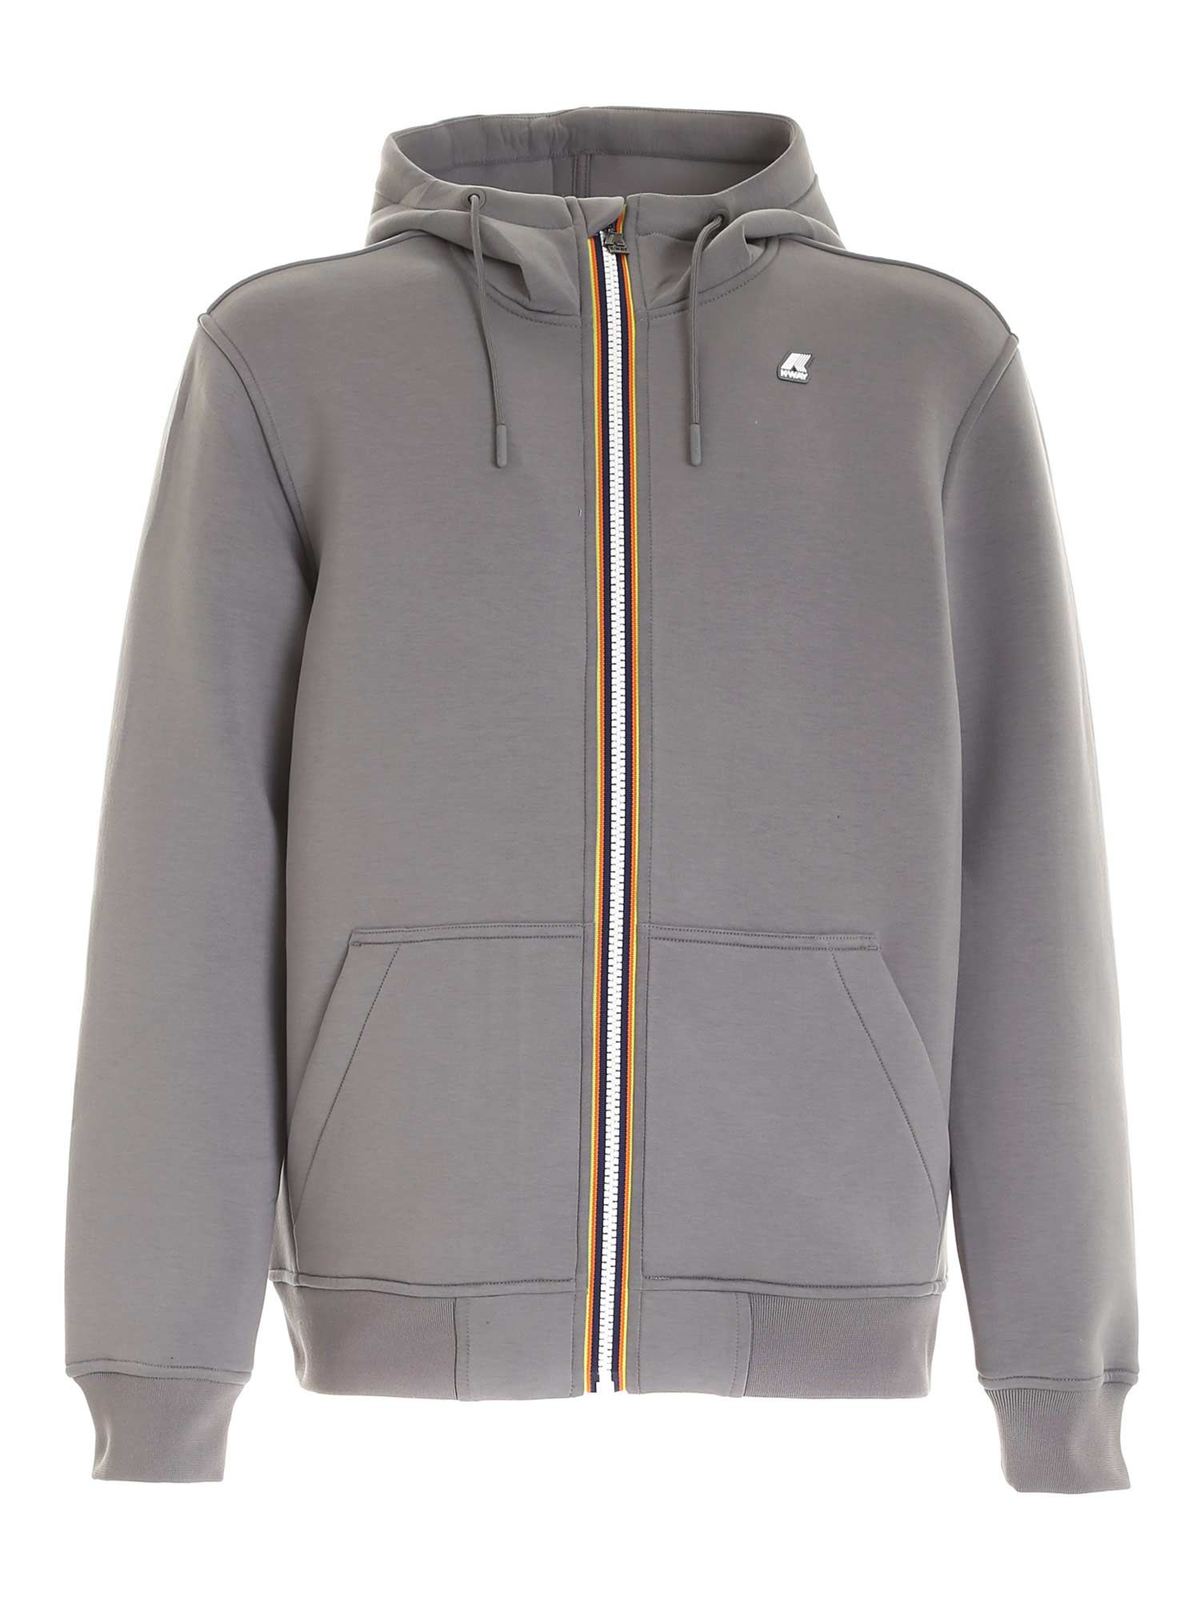 K-WAY Men's Clothing Jackets & Coats Grey NIB Authentic | eBay